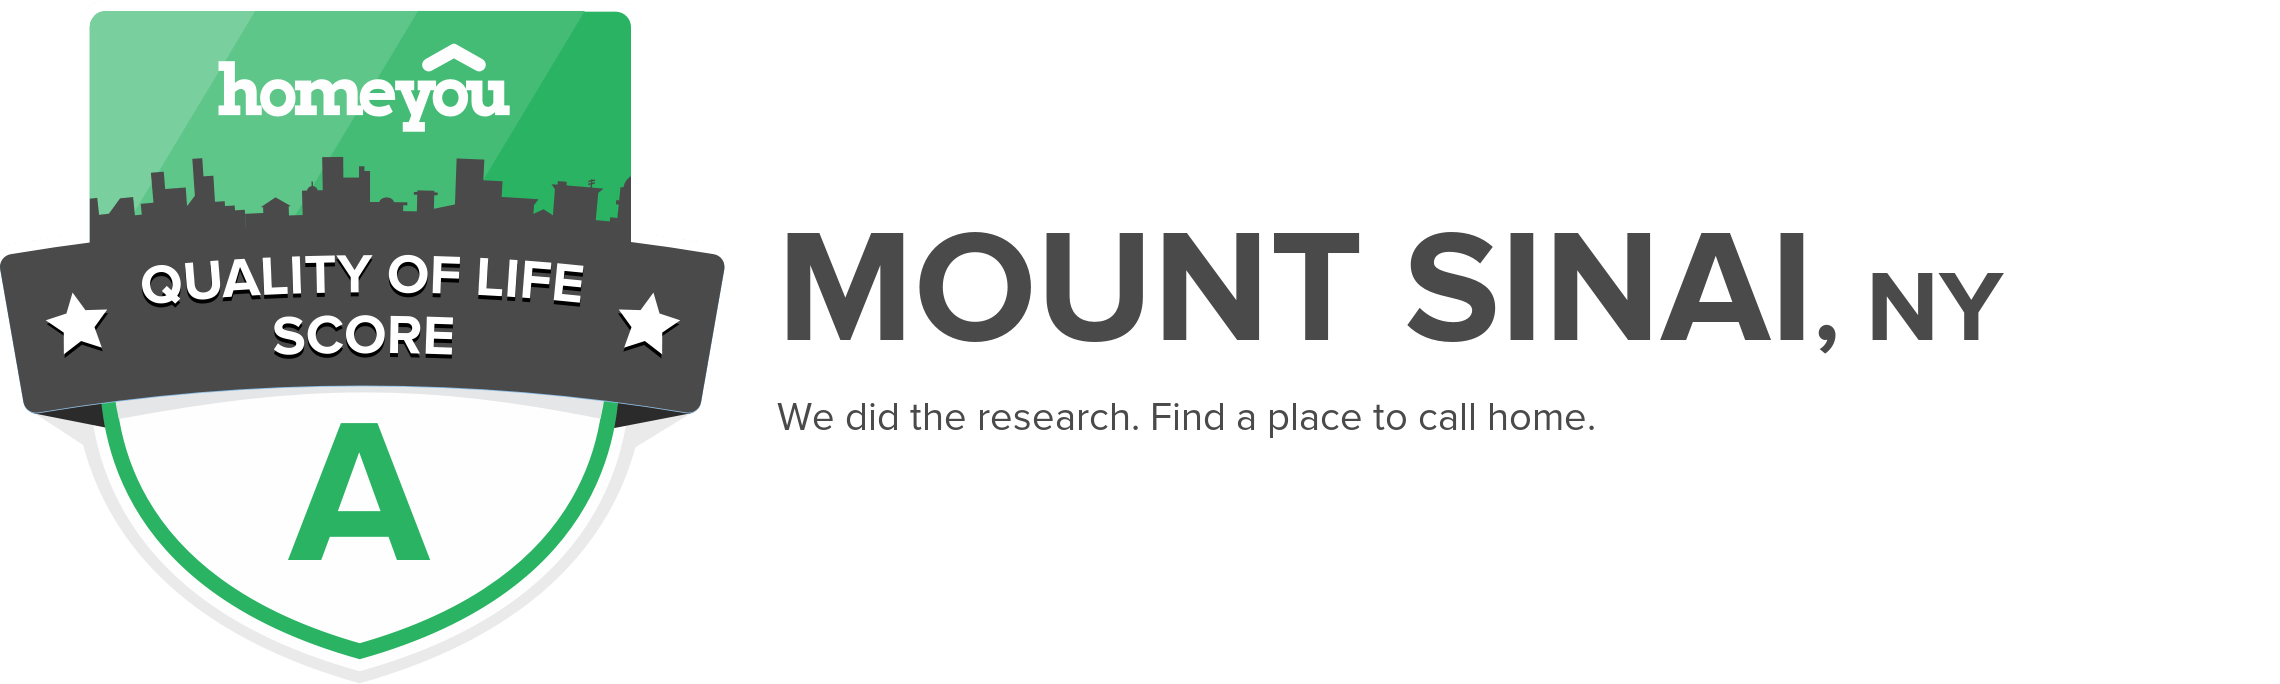 Mount Sinai, NY